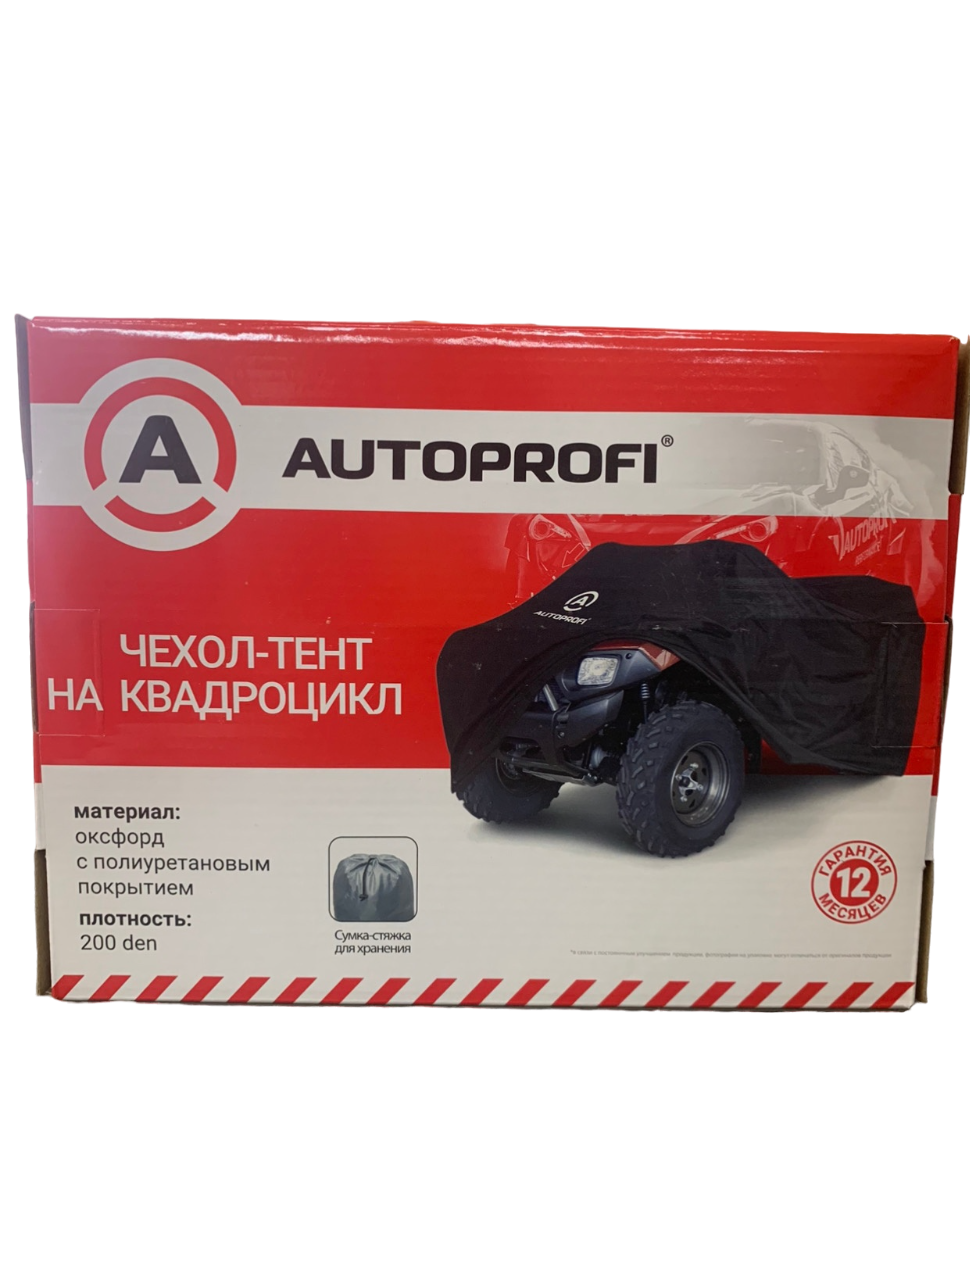 Чехол для квадроцикла, Autoprofi, ATV-200 (251), 251*125*85 см.